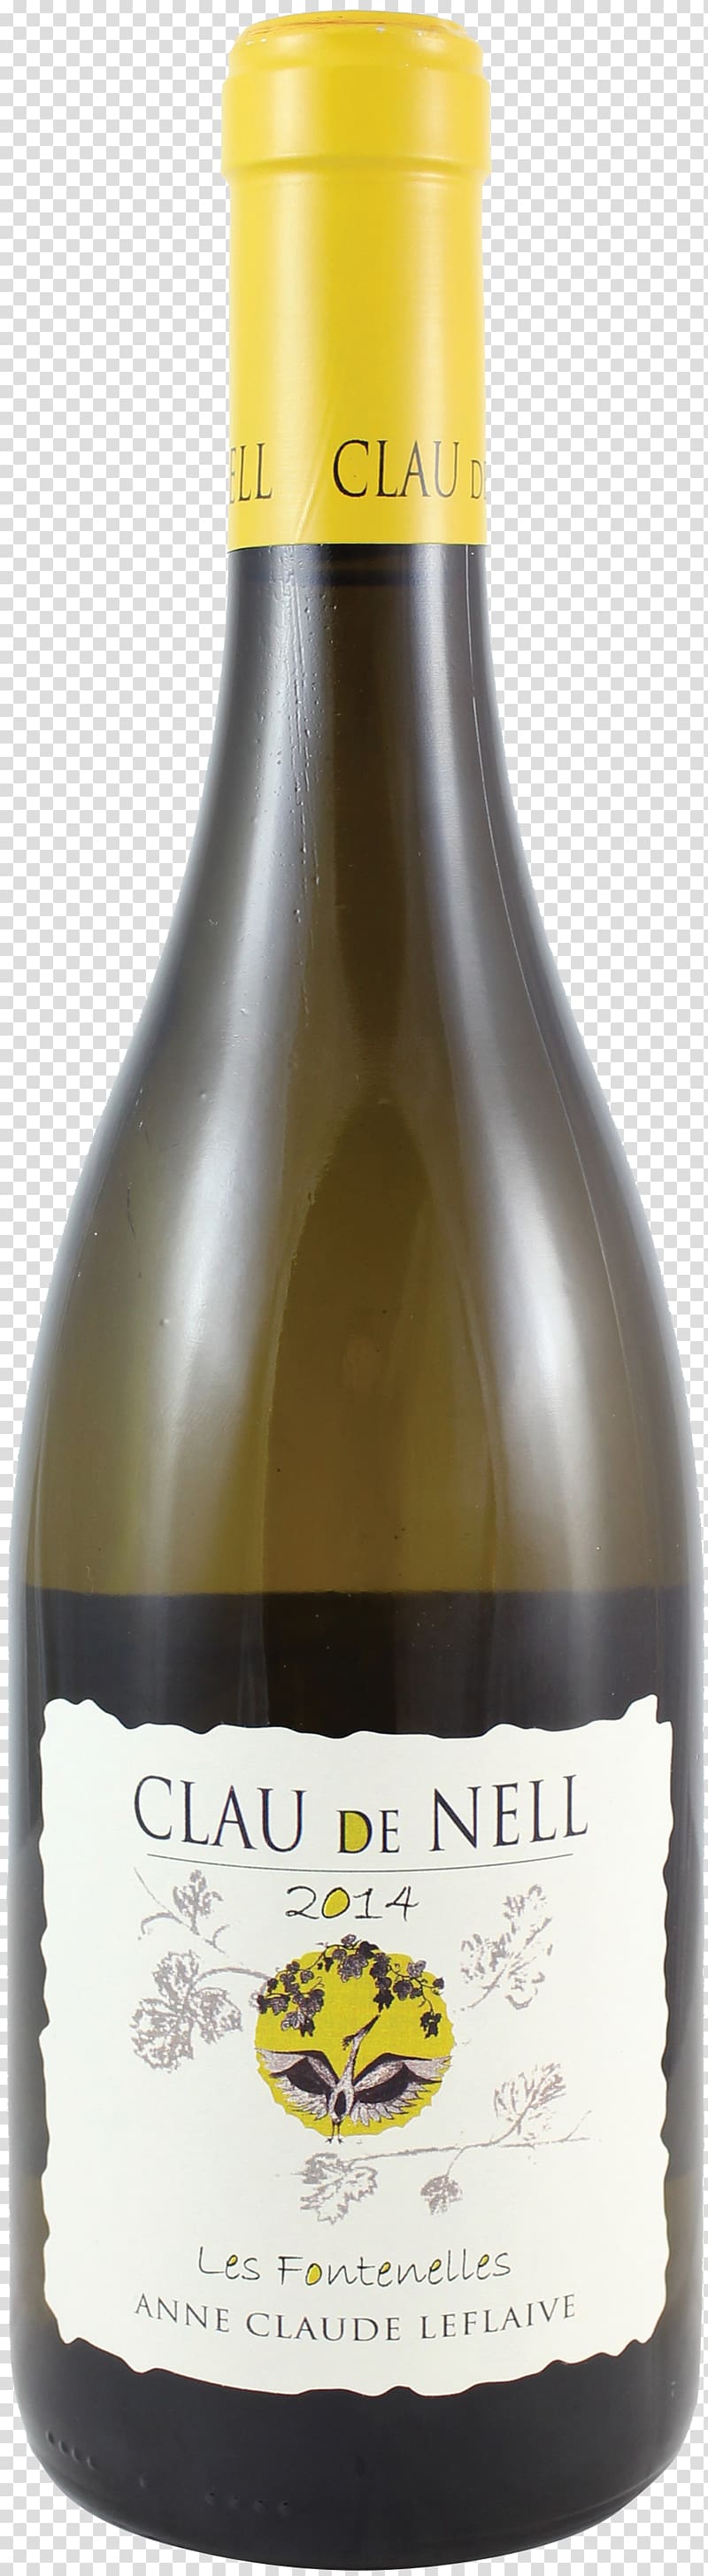 Chenin blanc Loire Valley White wine Clau de Nell Grolleau, melon vine transparent background PNG clipart